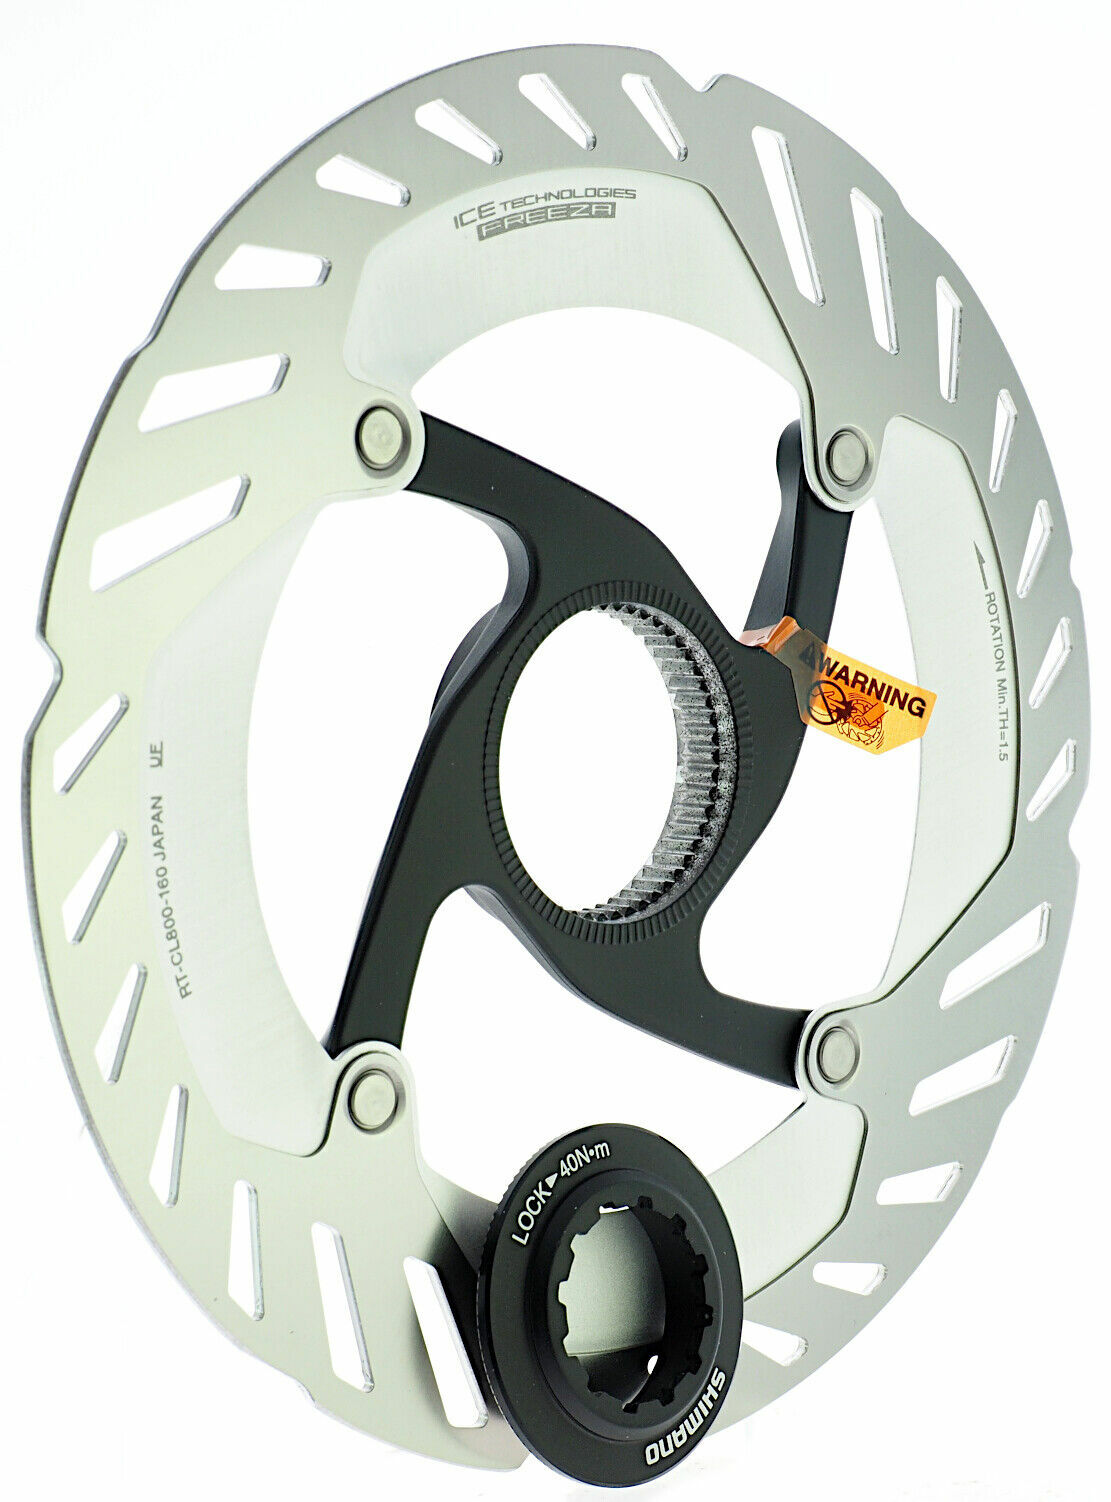 Disco de freio Shimano Rotor RT-CL800 Center Lock IceTech Freeza 160 mm